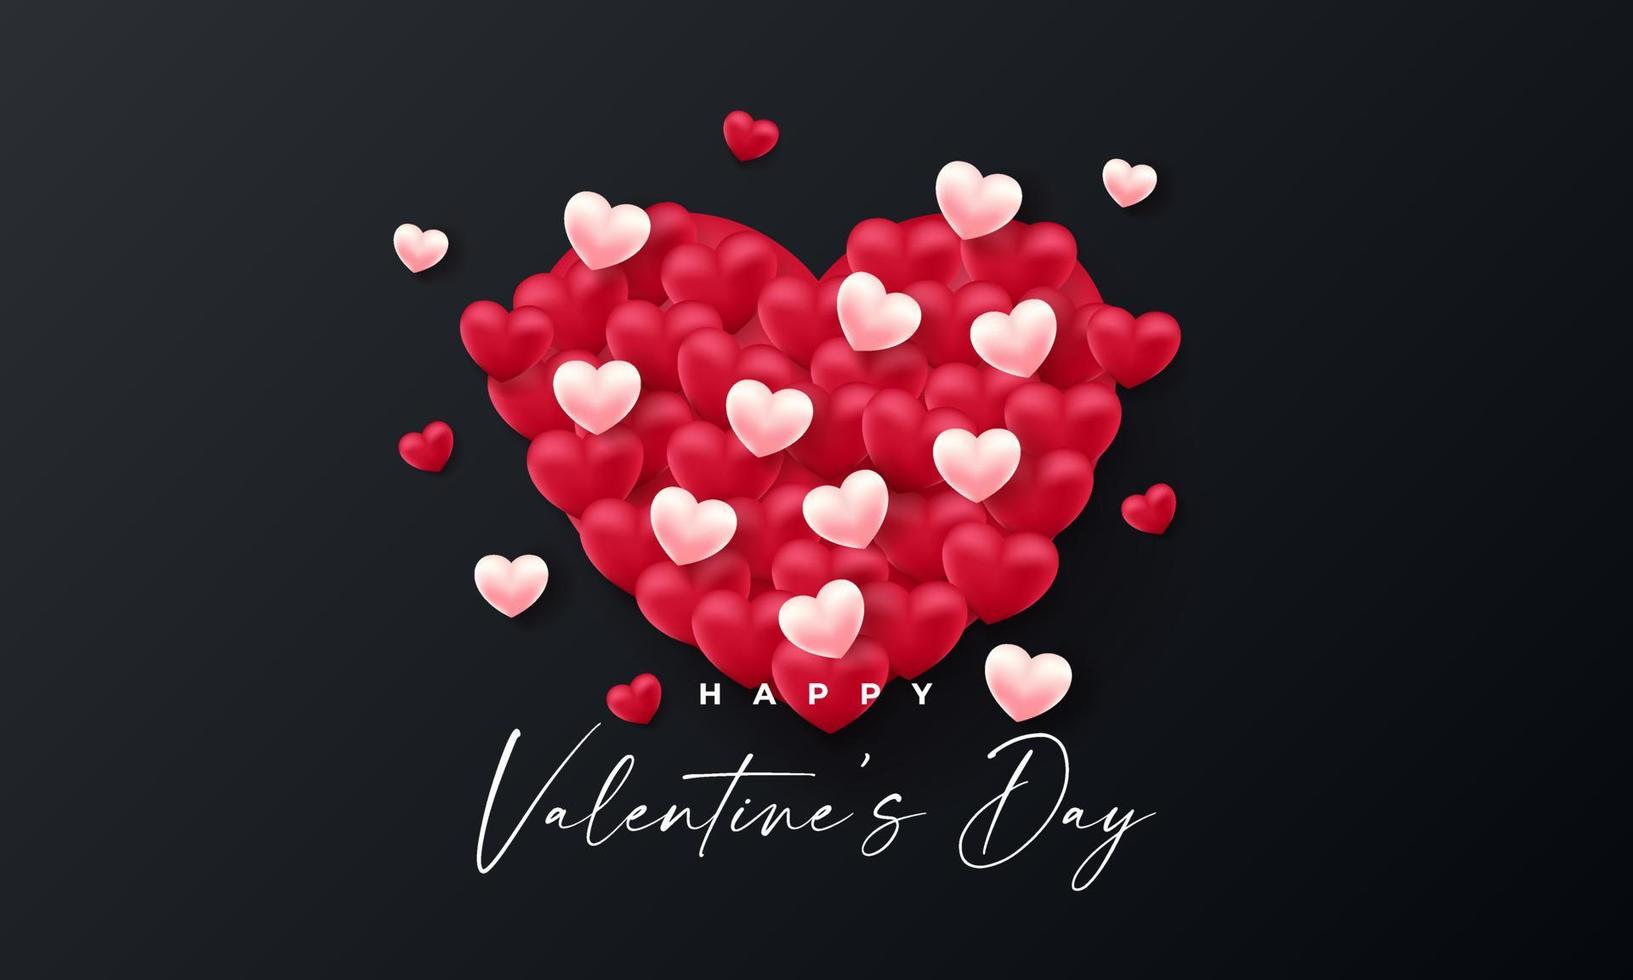 Valentinstag 3D Herzen. süßes Liebesbanner, romantische Grußkarte glücklicher Valentinstag wünscht Text, rotes Herzballonvektorkonzept vektor